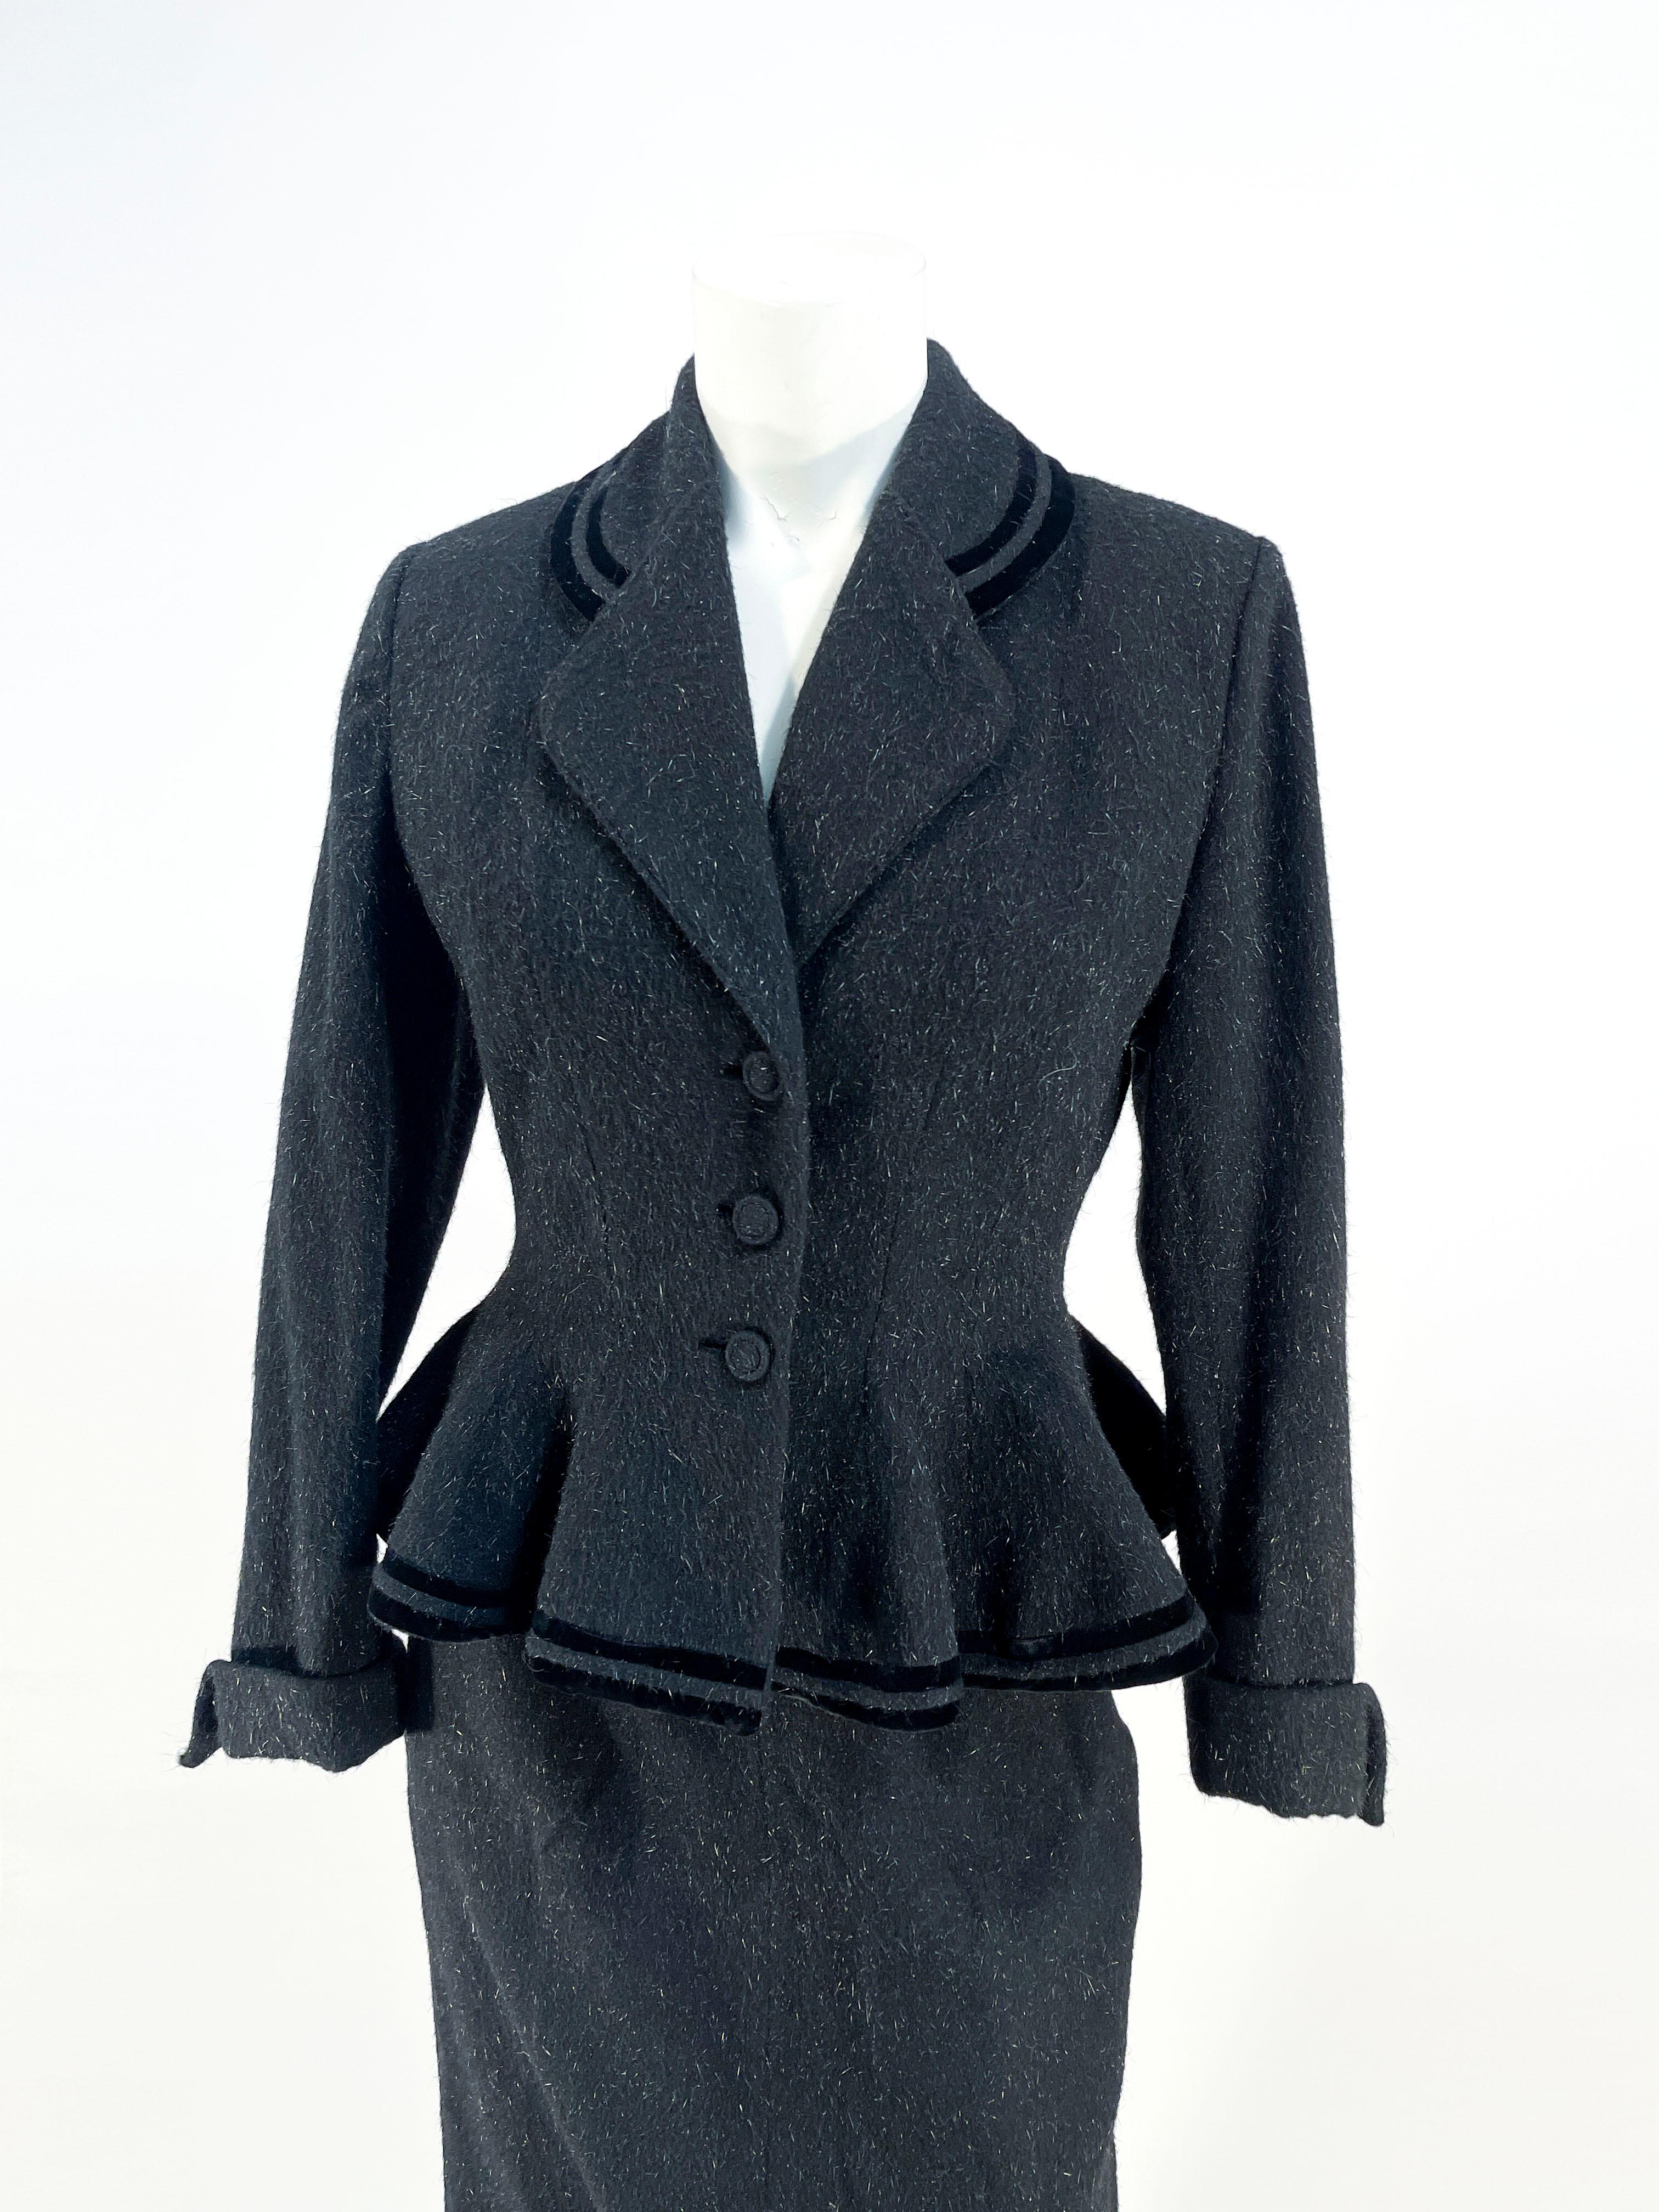 Fin des années 1940-début des années 1950 Ensemble veste et jupe en laine mouchetée Lilli Ann noire. La veste présente un col échancré, des boutons de créateur recouverts, des boutonnières encastrées, deux bandes de velours accentuant la couleur et